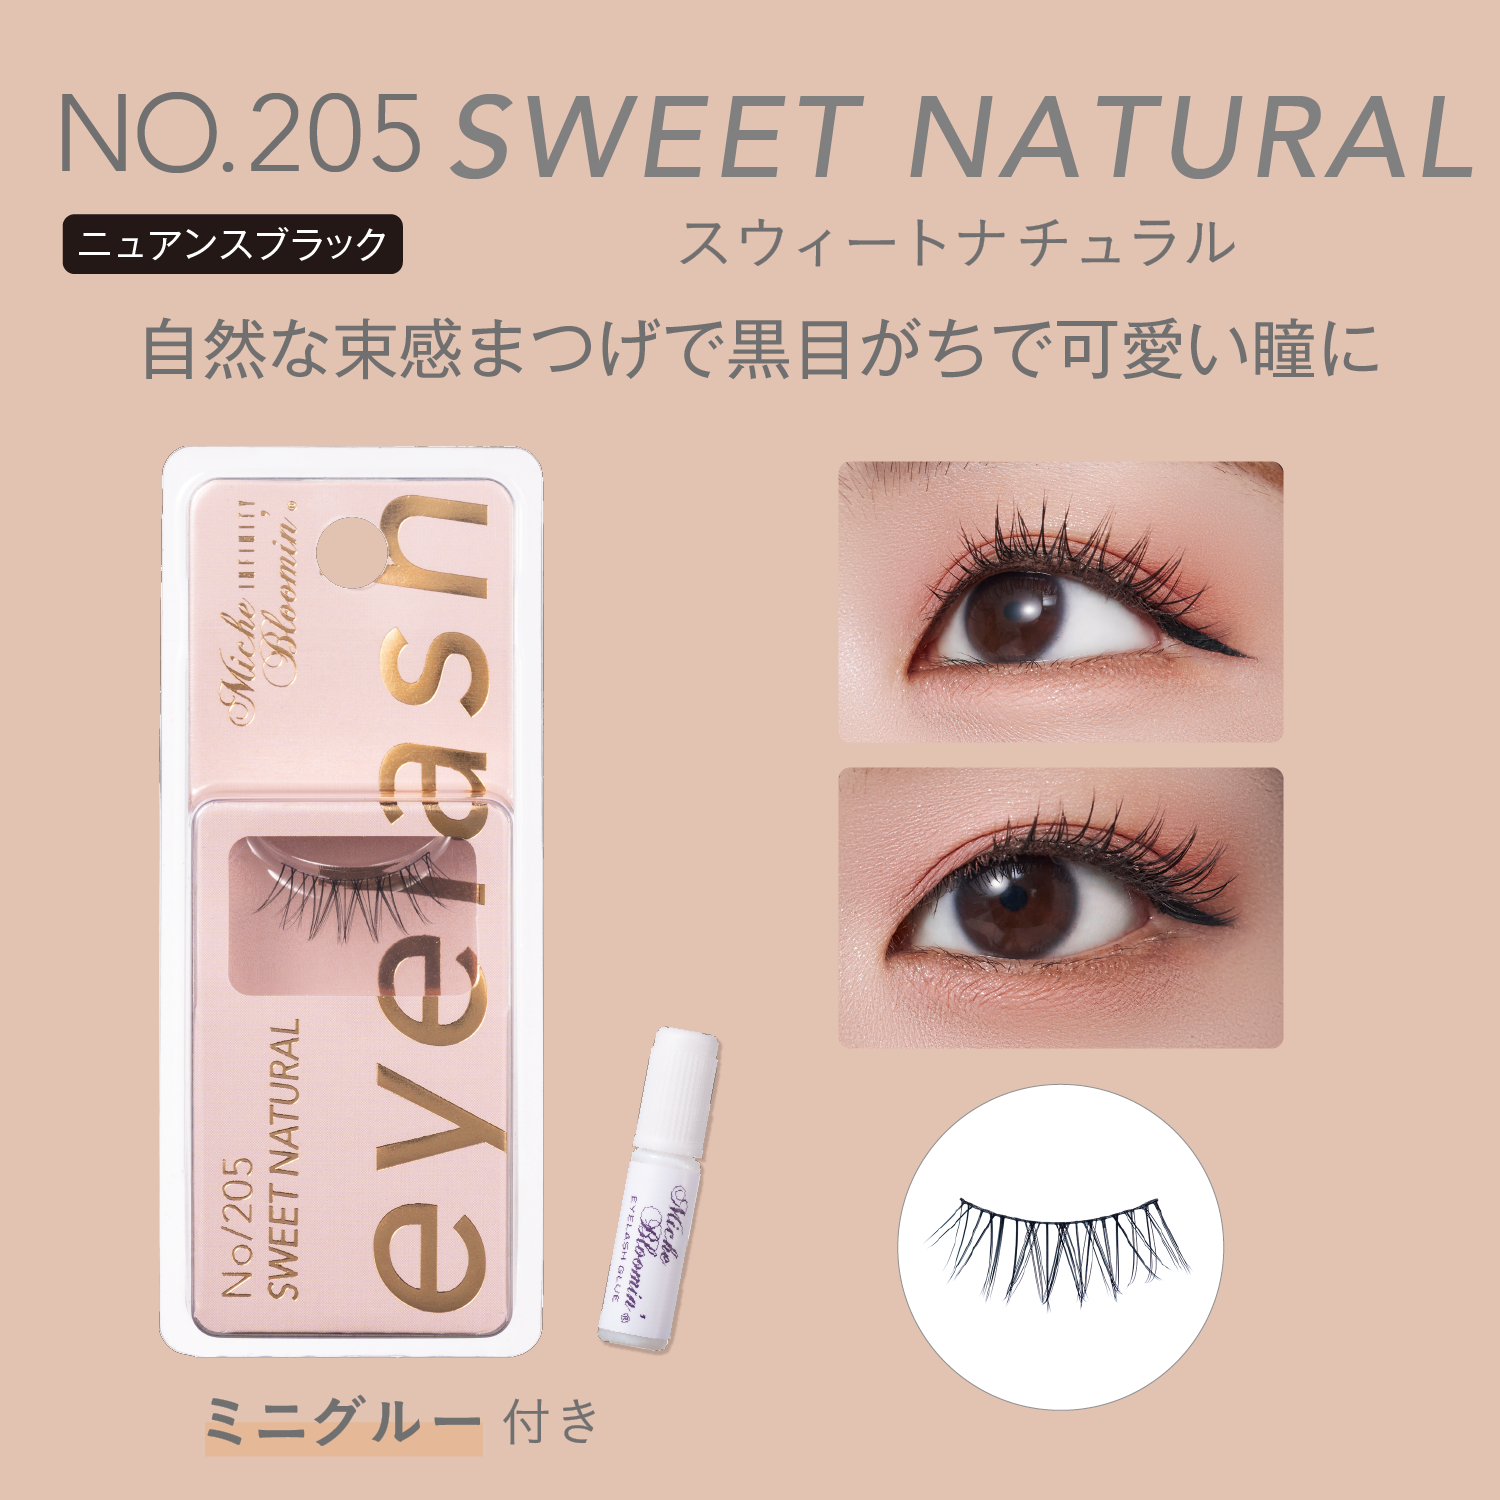 NO.205 Sweet Natural